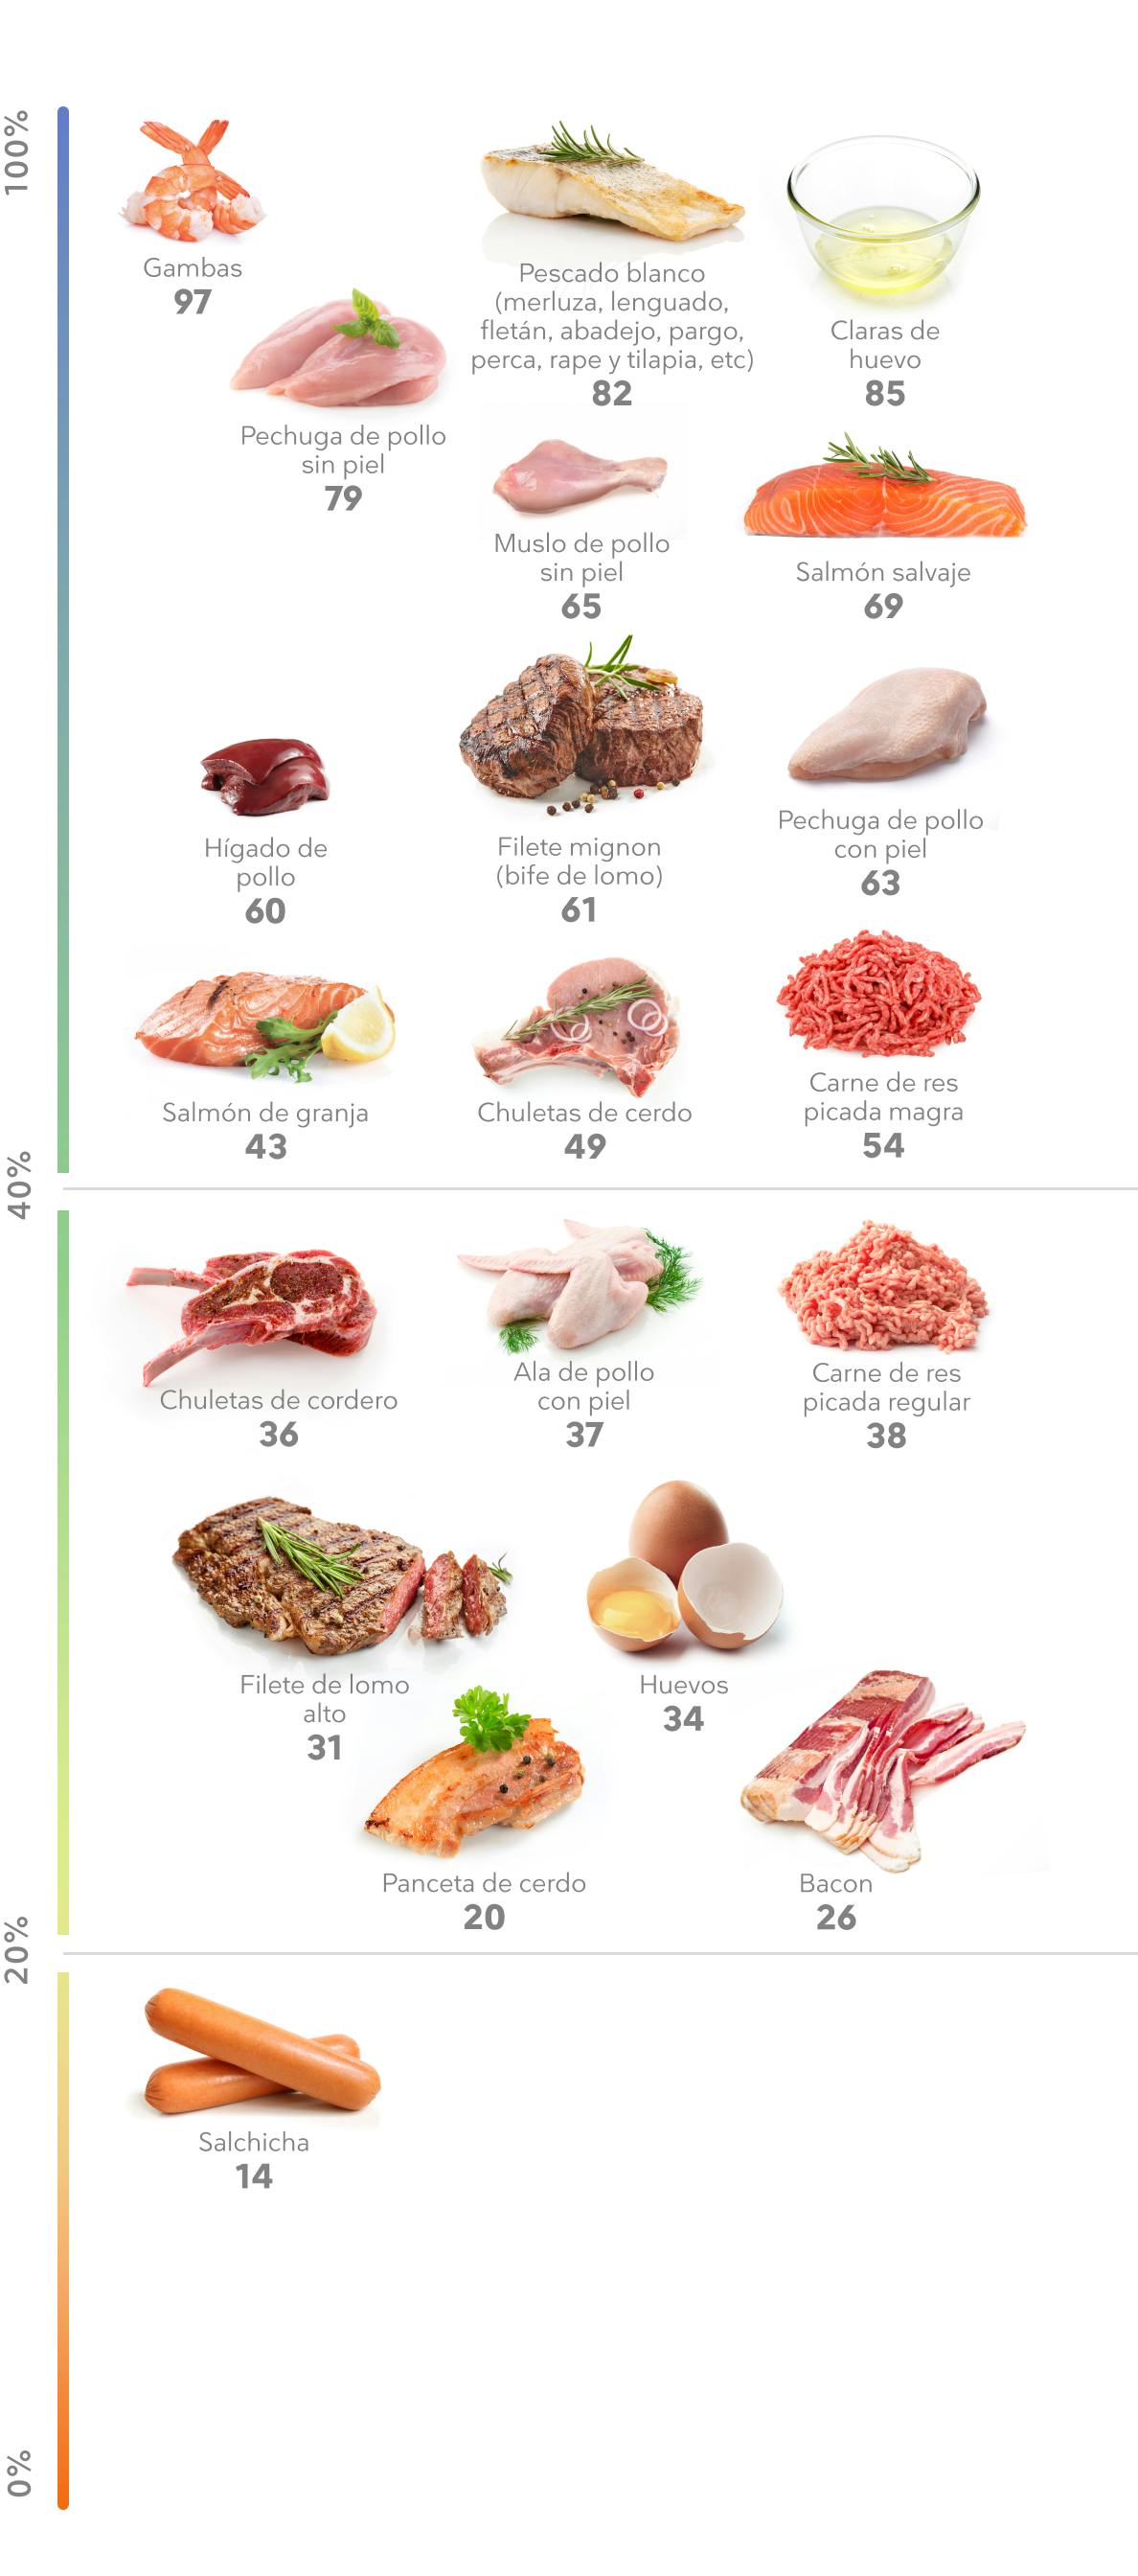 Porcentaje de proteína en Carne, Huevos, Pescados y Mariscos